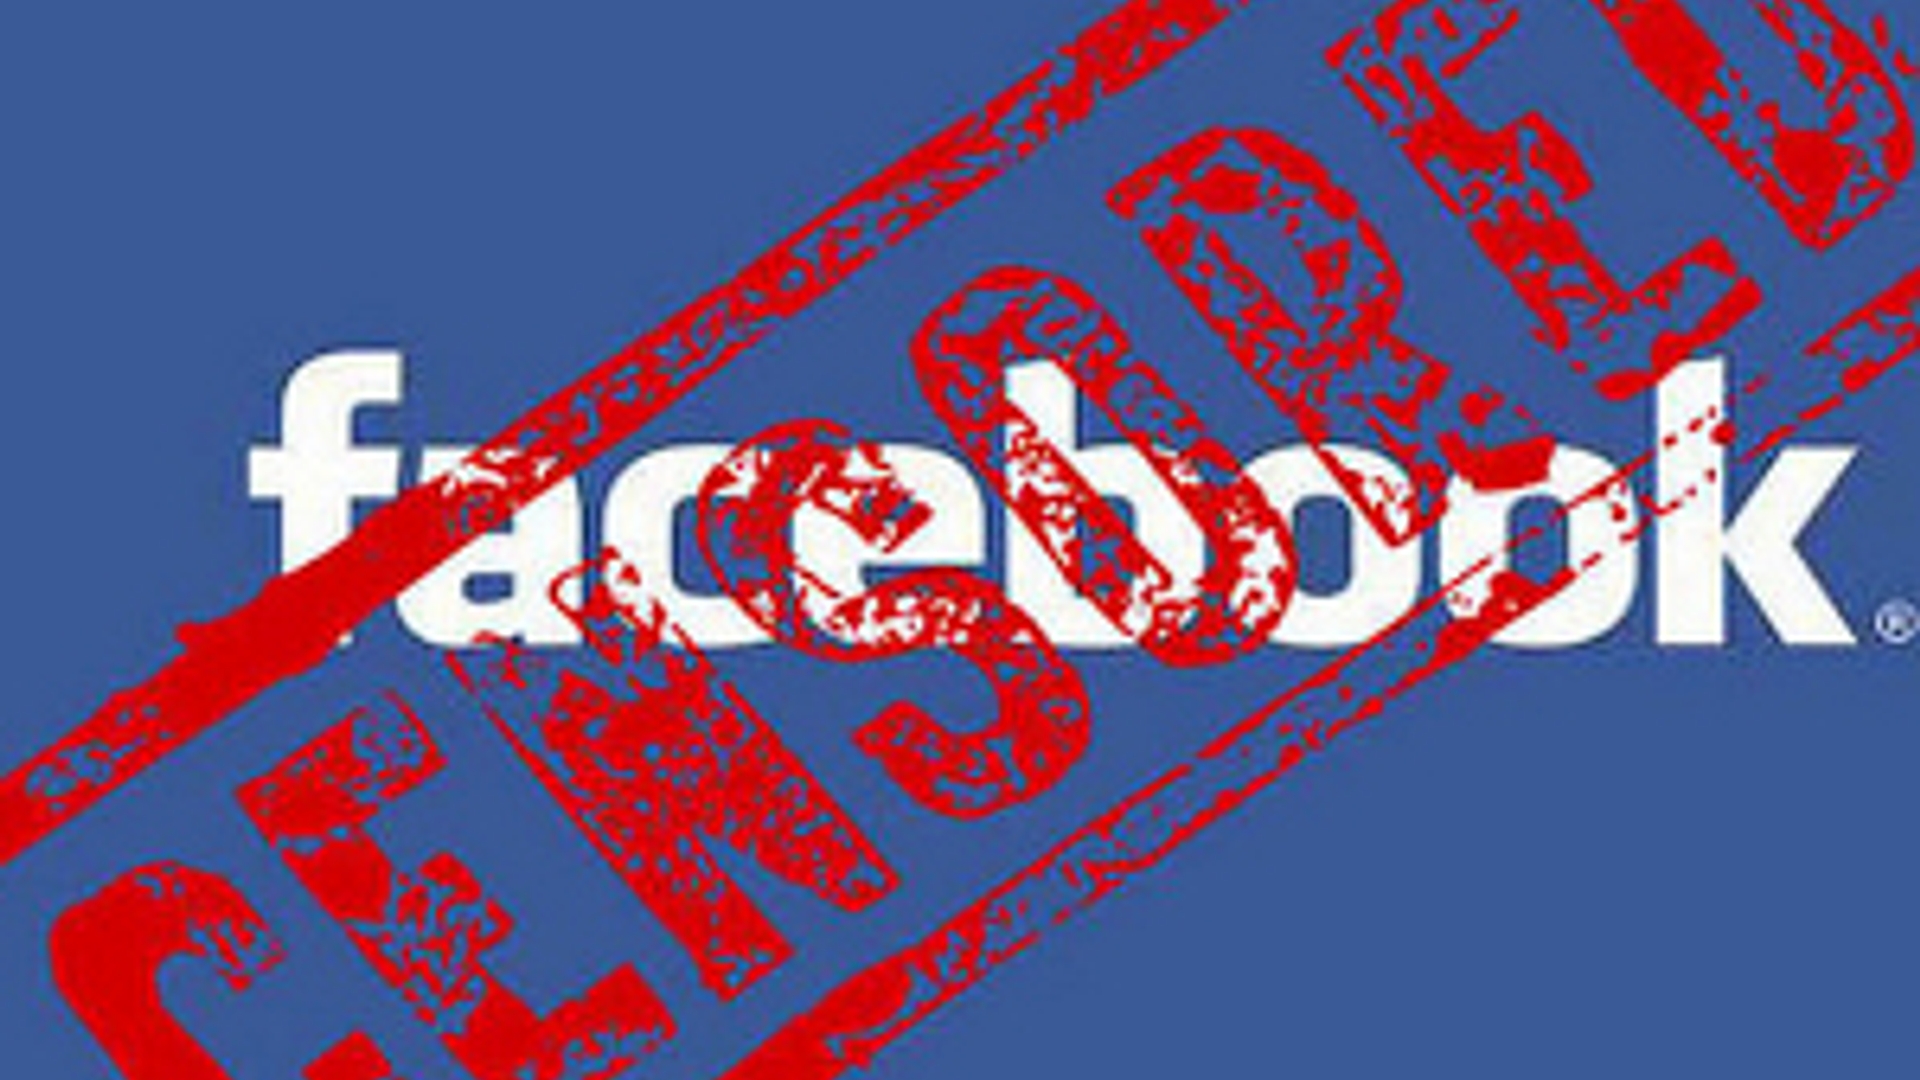 Flickr_Facebook_censuur300.jpg